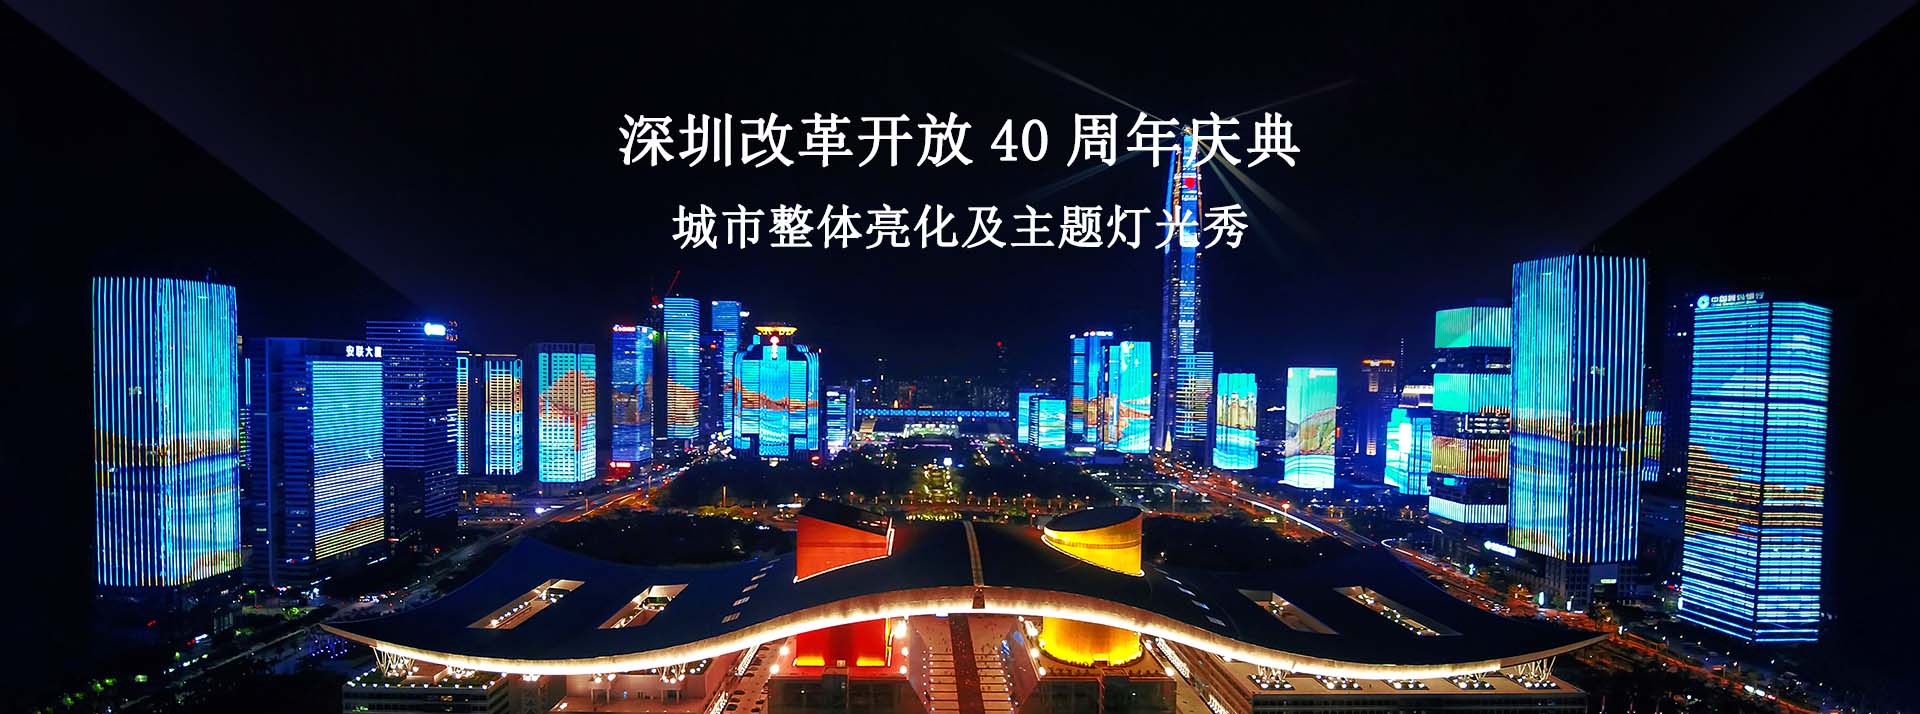 深圳一極光照明有限公司